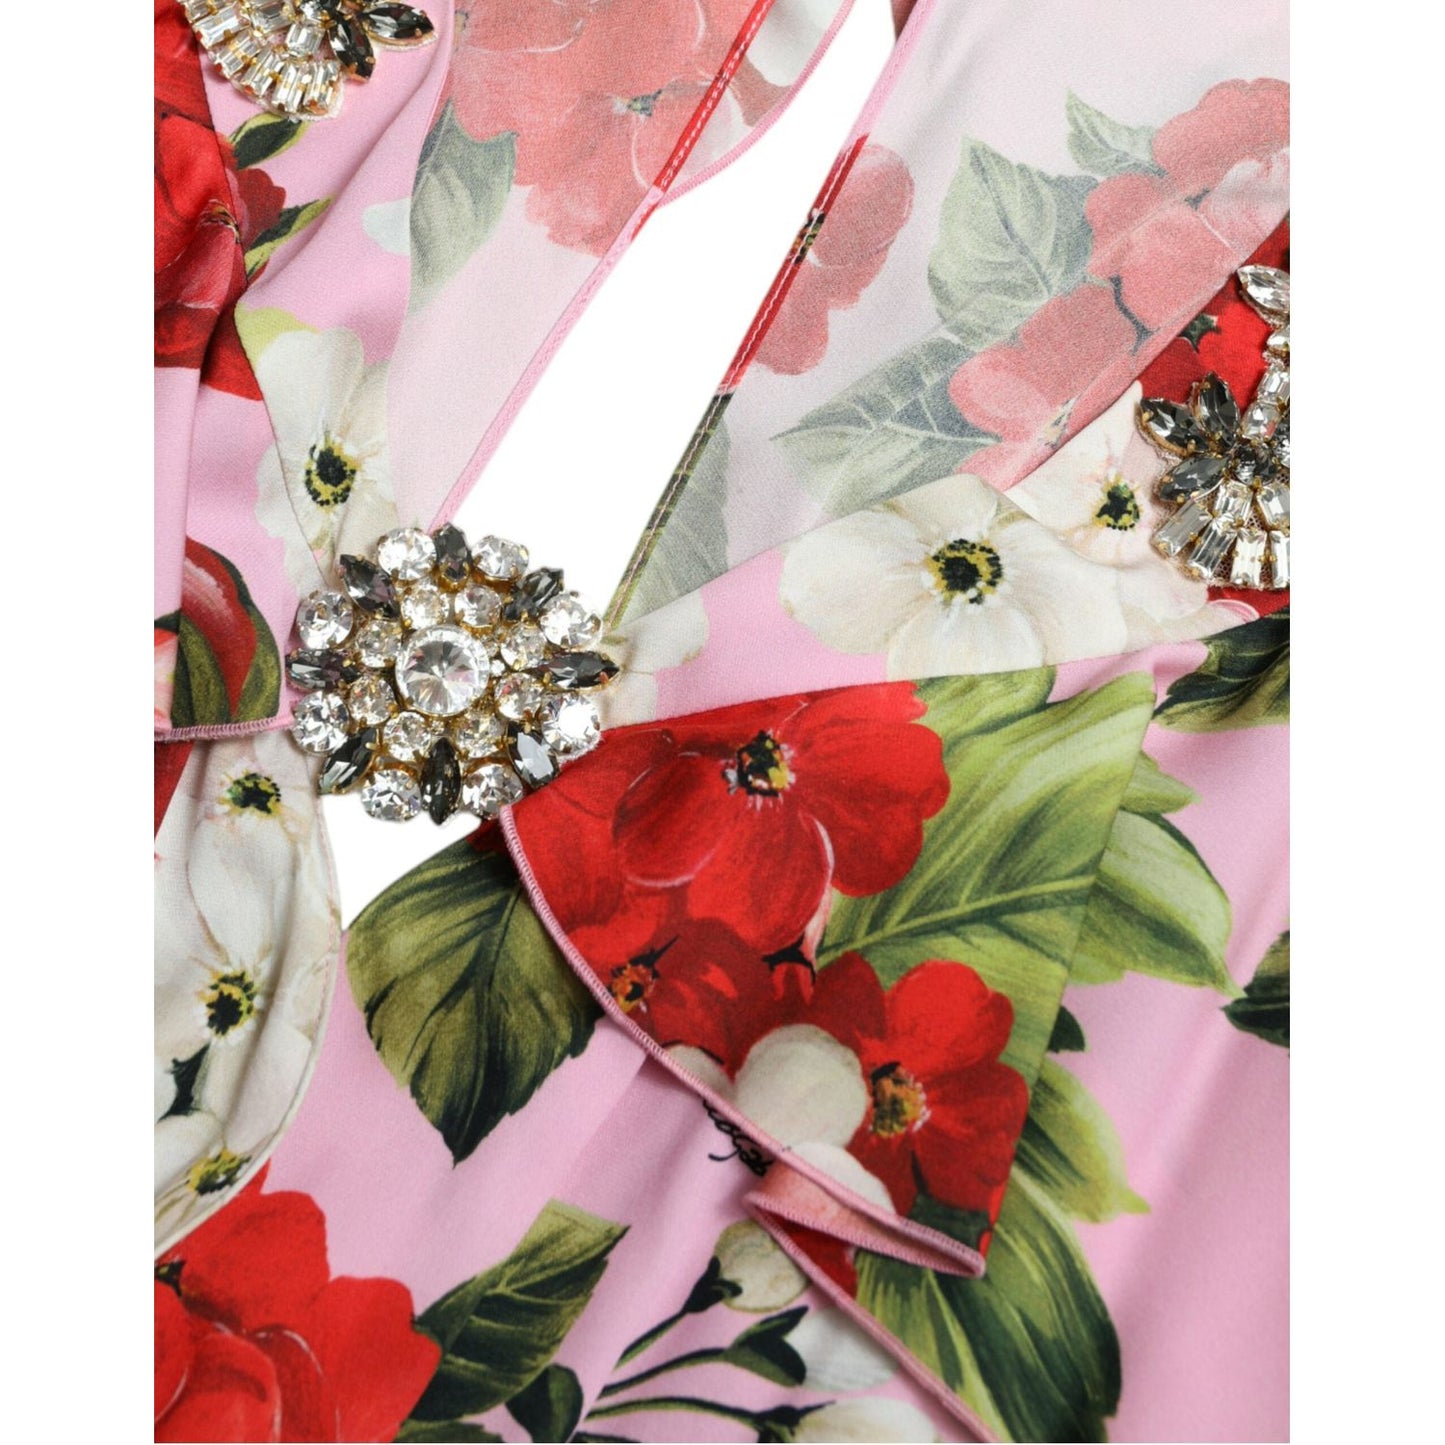 Dolce & Gabbana Elegant Crystal-Embellished Silk Dress multicolor-floral-crystal-embellished-a-line-dress